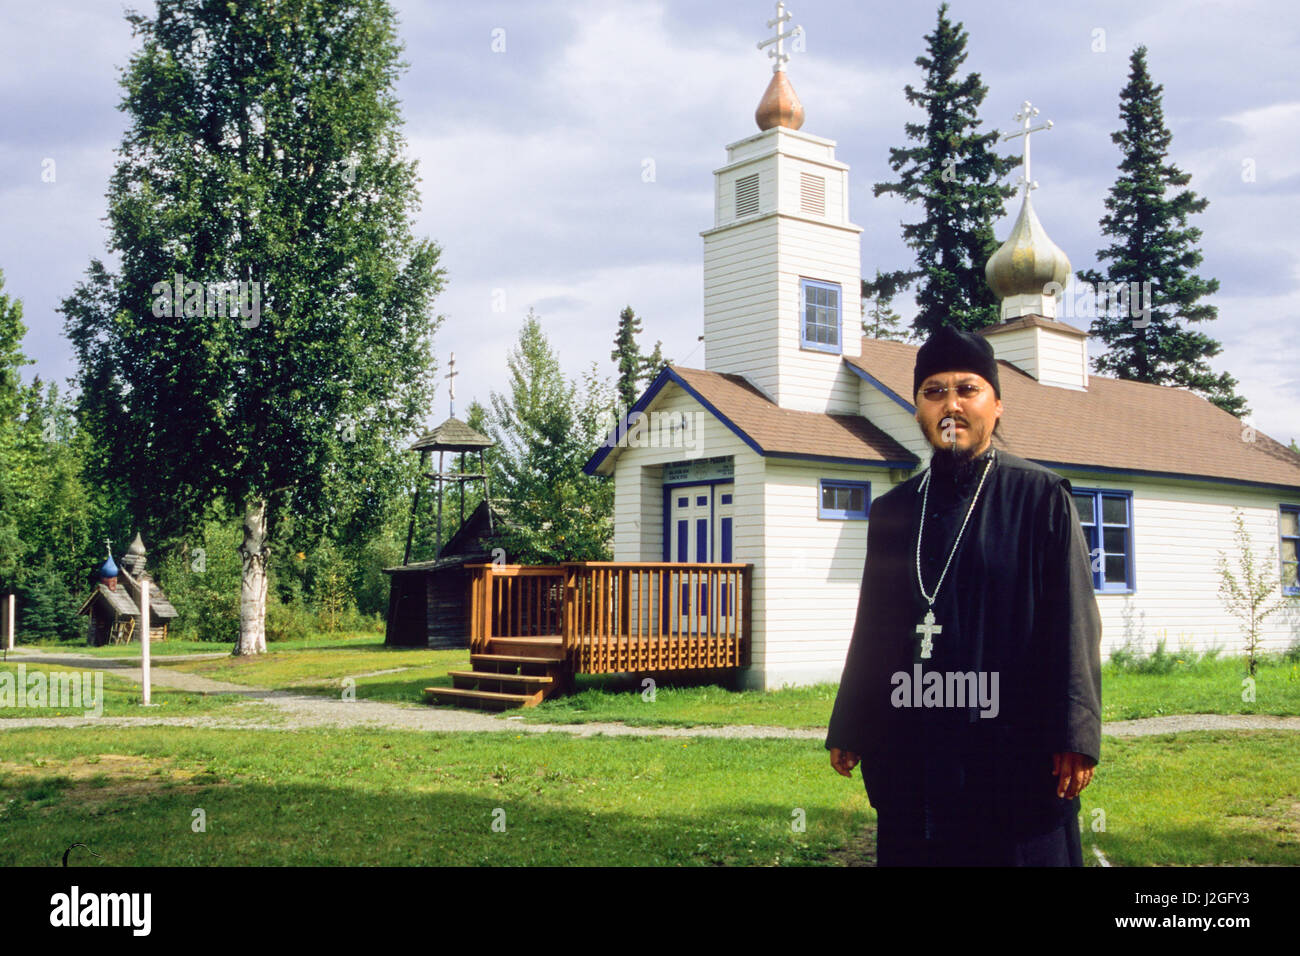 Homme d'Alaska vêtus de robes noires de la paroisse se trouve en face de l'Église orthodoxe russe Saint-nicolas à Eklutna Historical Park, situé à l'intérieur d'origine de l'Athabaskan, indiens. Eklutna Alaska Banque D'Images